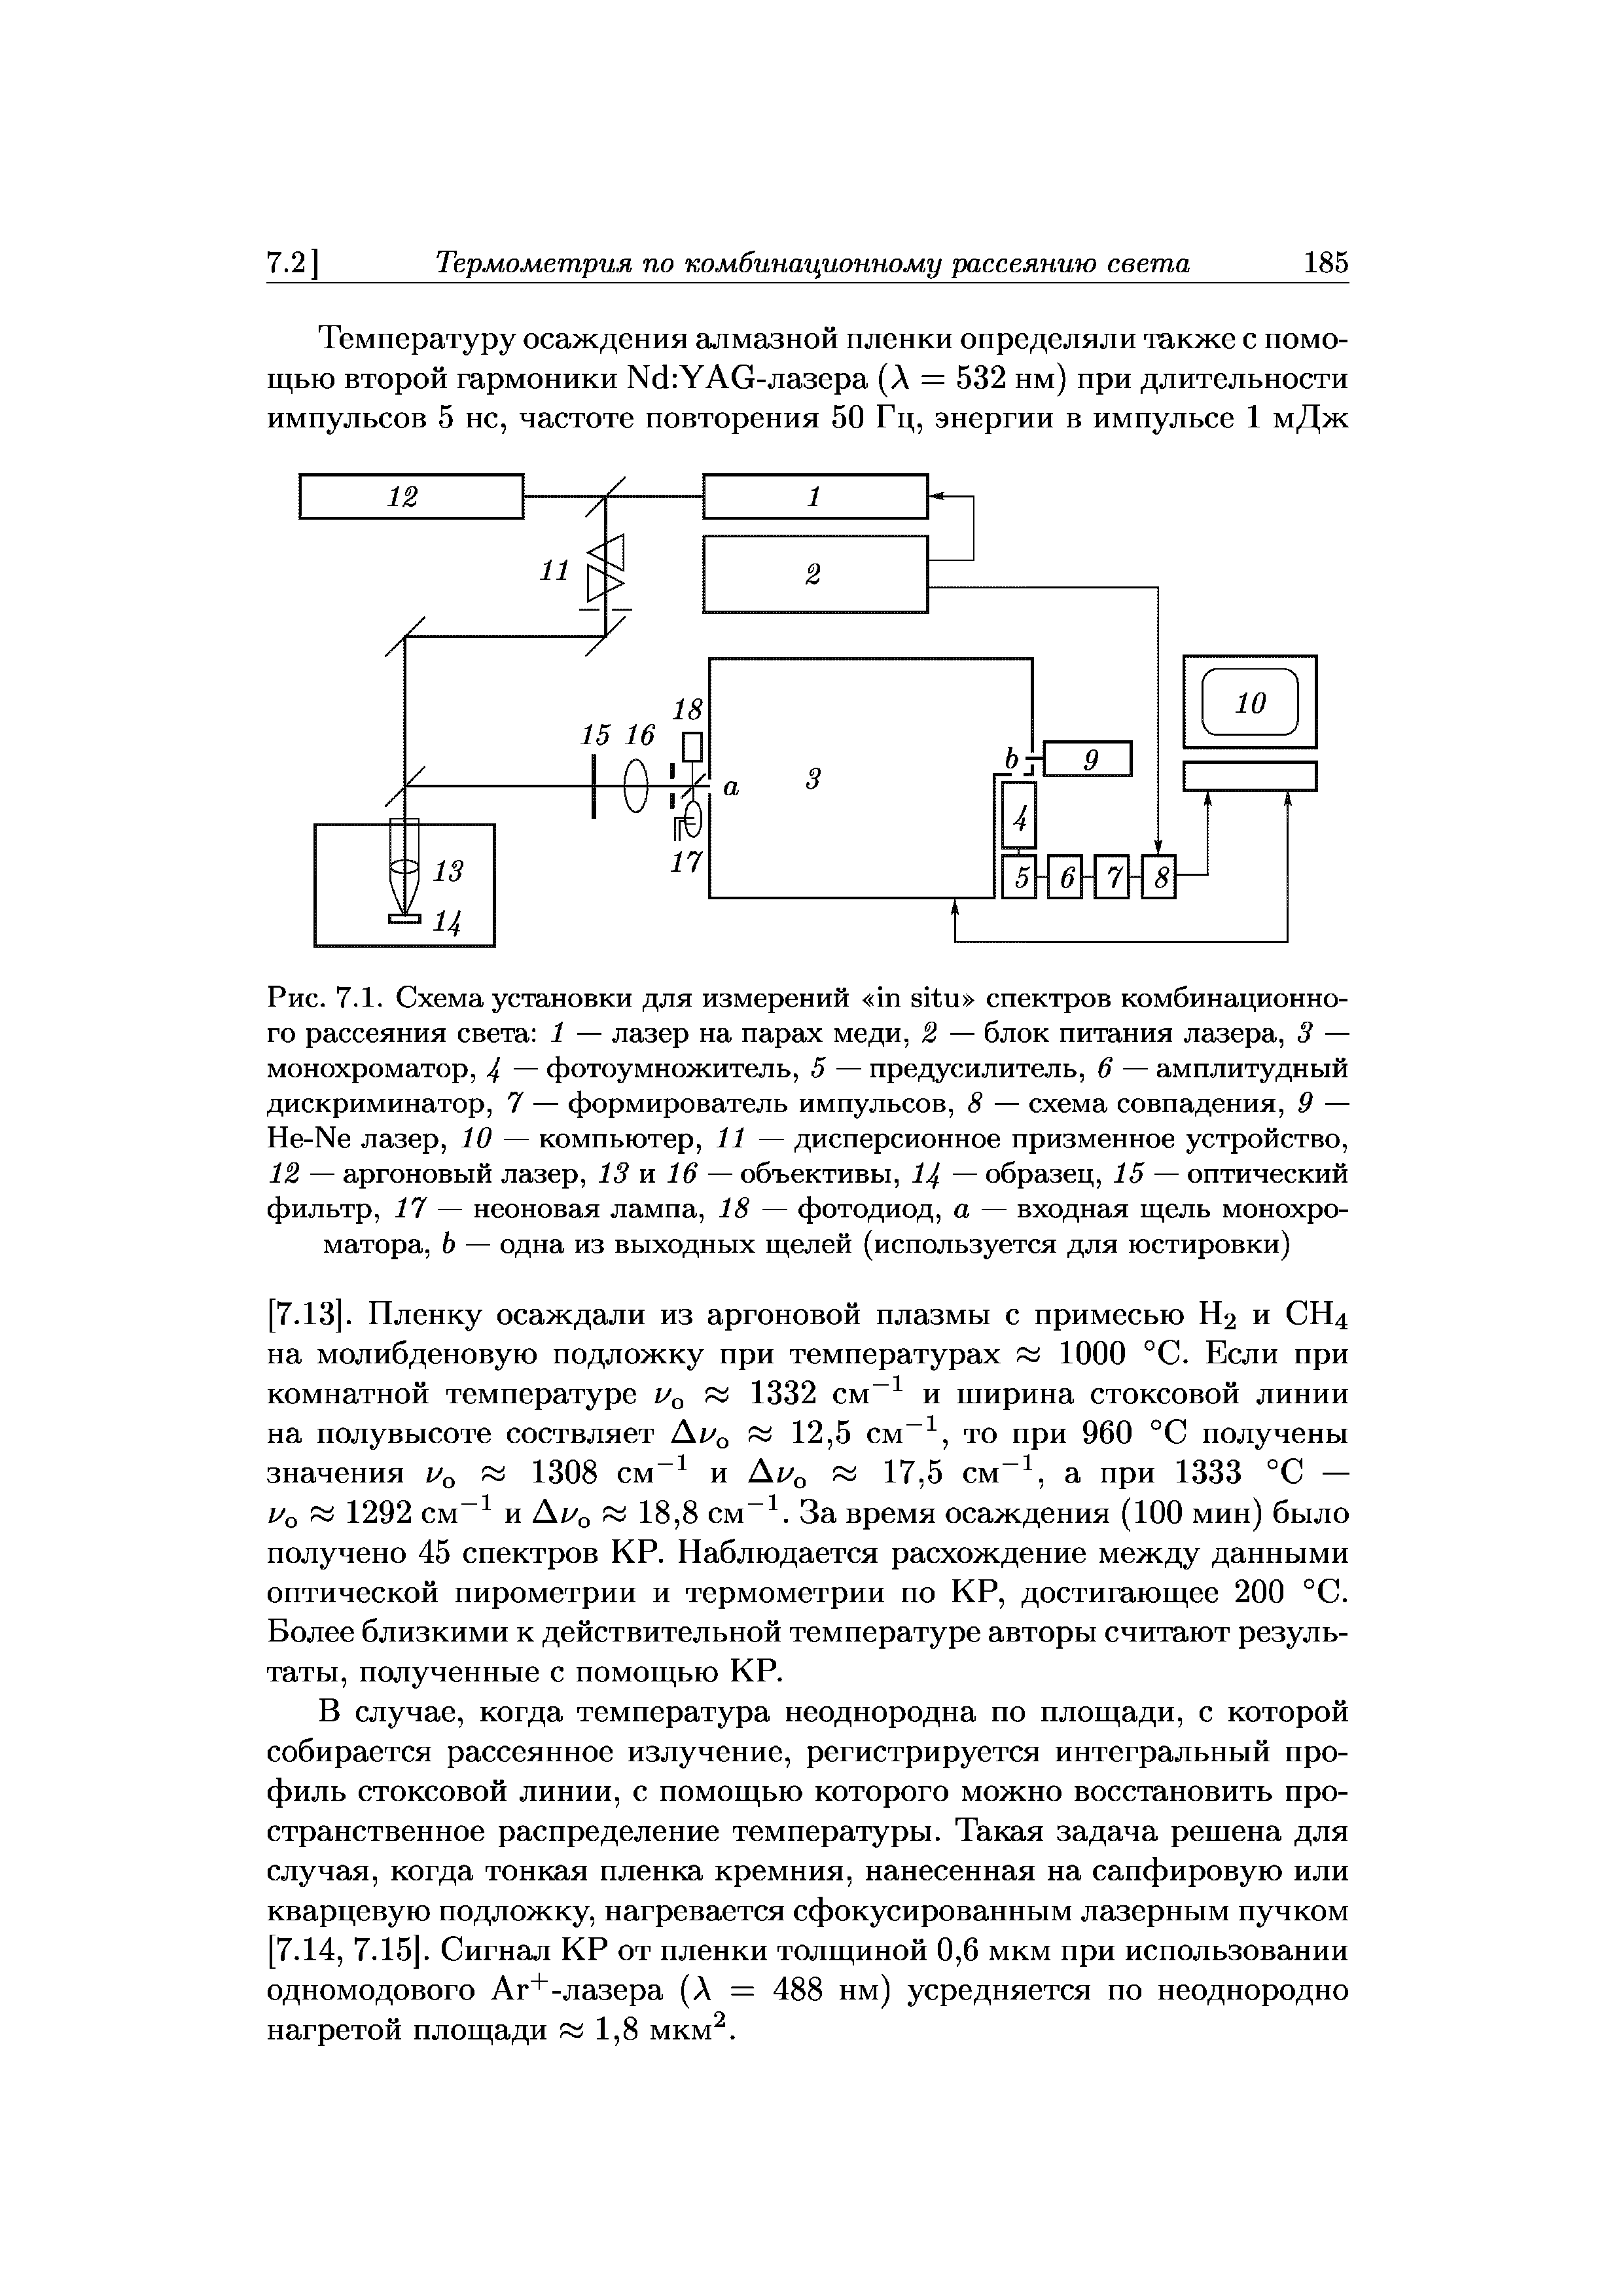 Рис. 7.1. Схема установки для измерений in situ <a href="/info/575108">спектров комбинационного рассеяния света</a> 1 — лазер на парах меди, 2 — <a href="/info/294957">блок питания</a> лазера, 3 — монохроматор, 4 фотоумножитель, 5 — предусилитель, 6 — амплитудный дискриминатор, 7 — формирователь импульсов, 8 — <a href="/info/13814">схема совпадения</a>, 9 — He-Ne лазер, 10 — компьютер, 11 — дисперсионное призменное устройство, 12 — <a href="/info/144128">аргоновый лазер</a>, 13 и 16 — объективы, 14 — образец, 15 — <a href="/info/69687">оптический фильтр</a>, 17 — <a href="/info/196624">неоновая лампа</a>, 18 — фотодиод, а — входная щель монохроматора, Ь — одна из выходных щелей (используется для юстировки)
